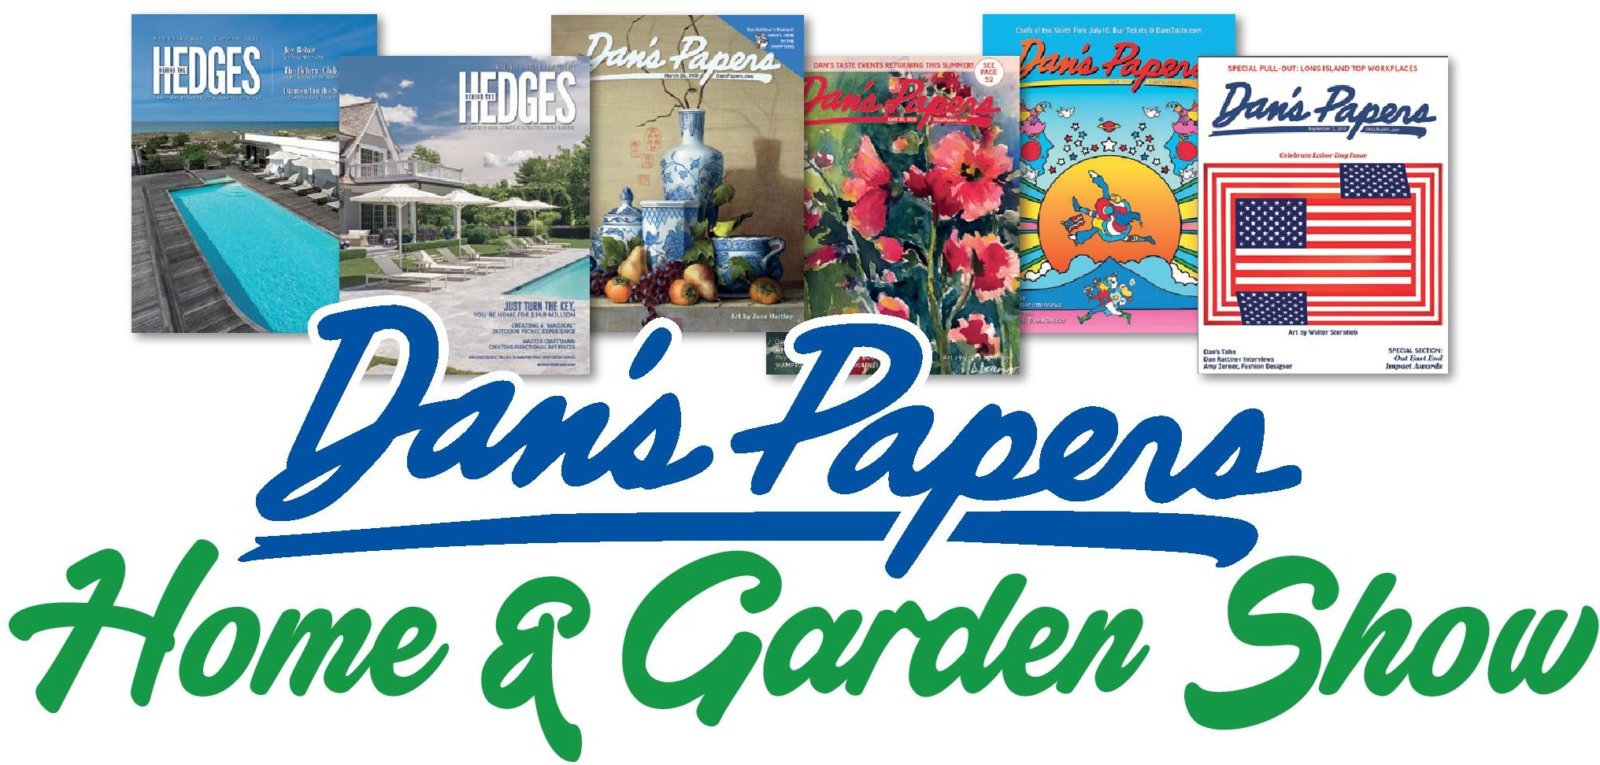 Dan’s Papers Home & Garden Show Coming to Southampton